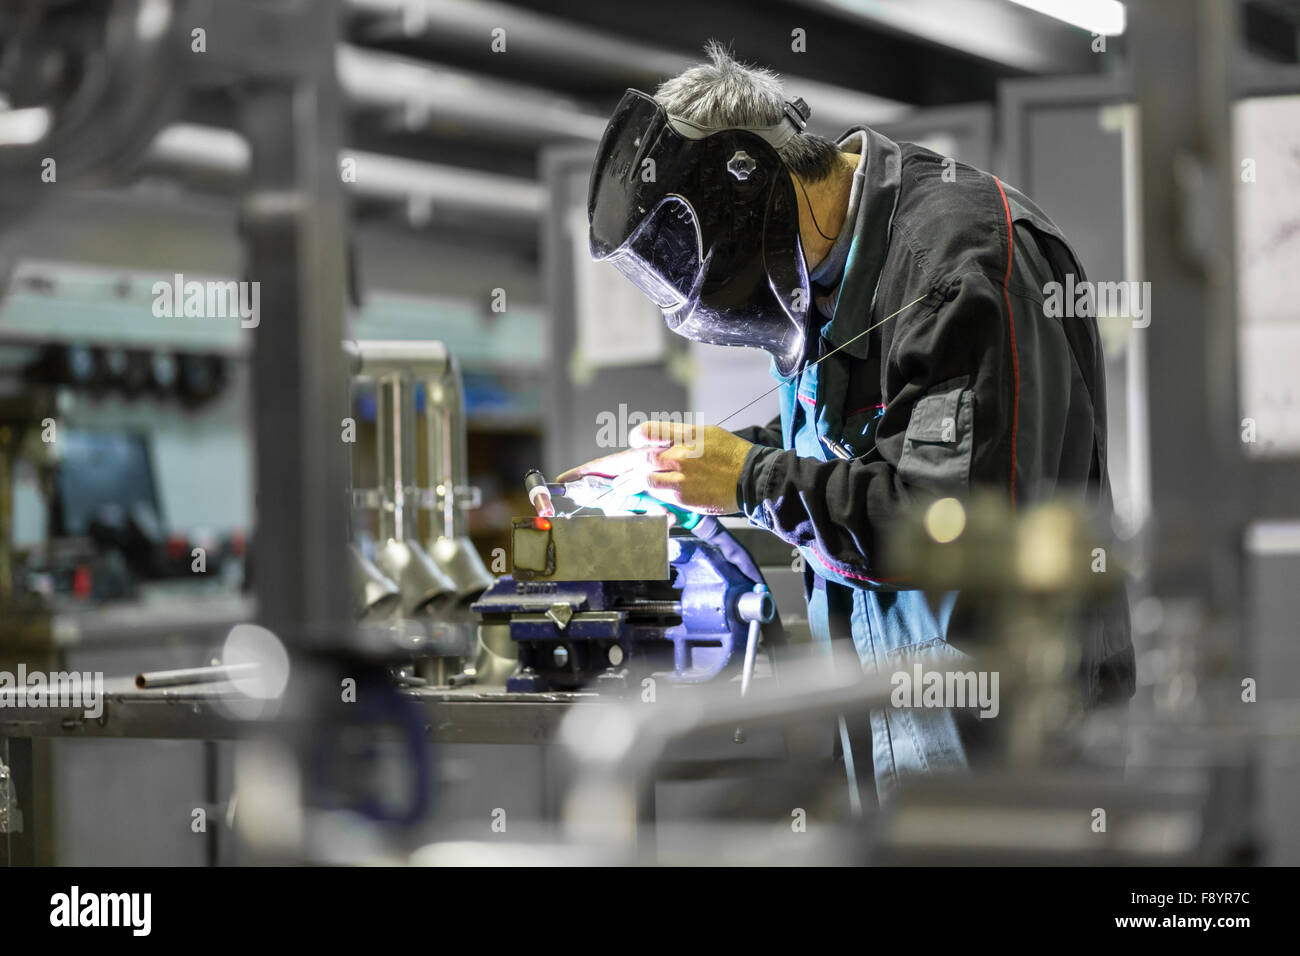 Industrial worker welding in metal factory. Stock Photo